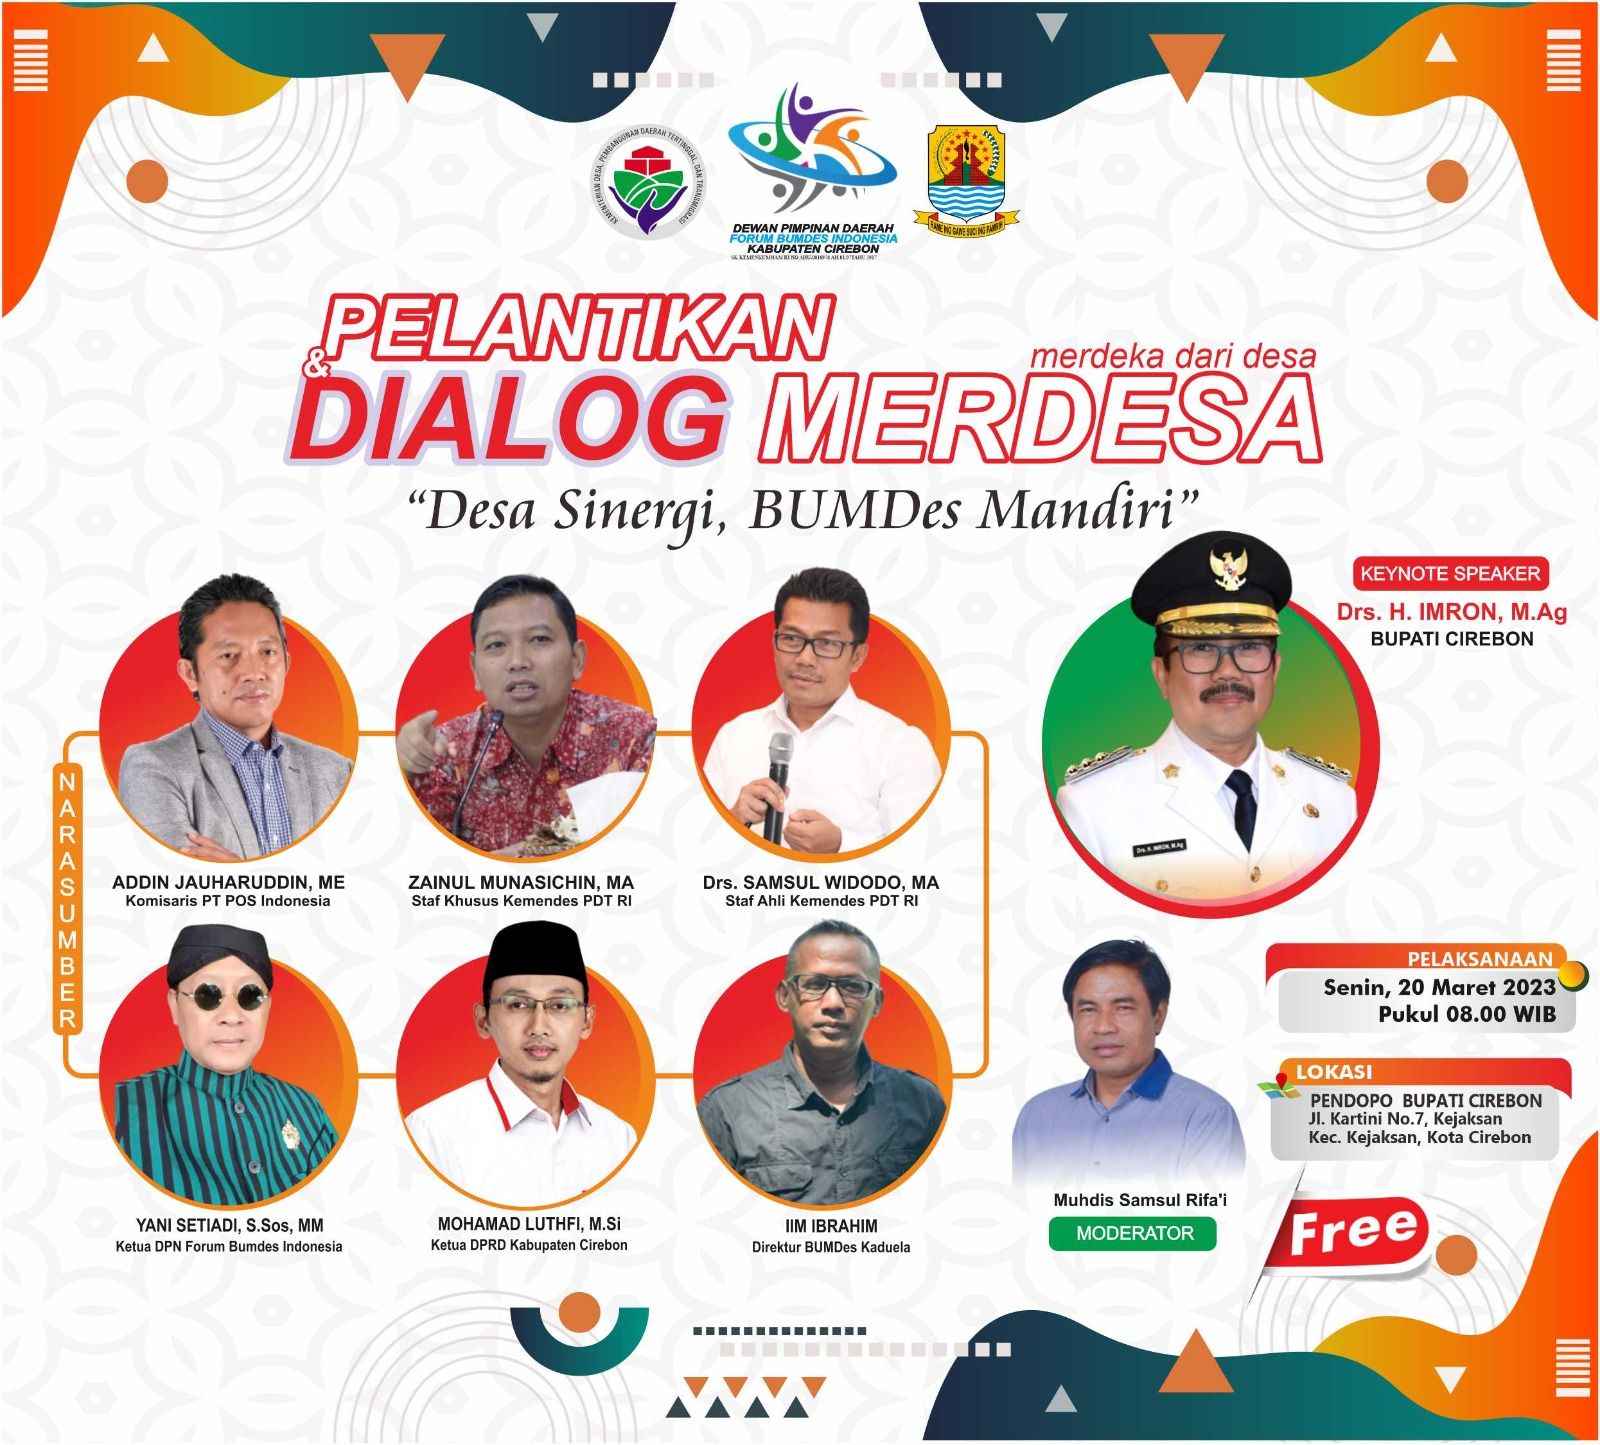 Agenda Senin, 20 Maret 2023: Pelantikan DPD Forum Bumdes Indonesia Kabupaten Cirebon dan Dialog Merdesa "Desa Sinergi, Bumdes Mandiri."